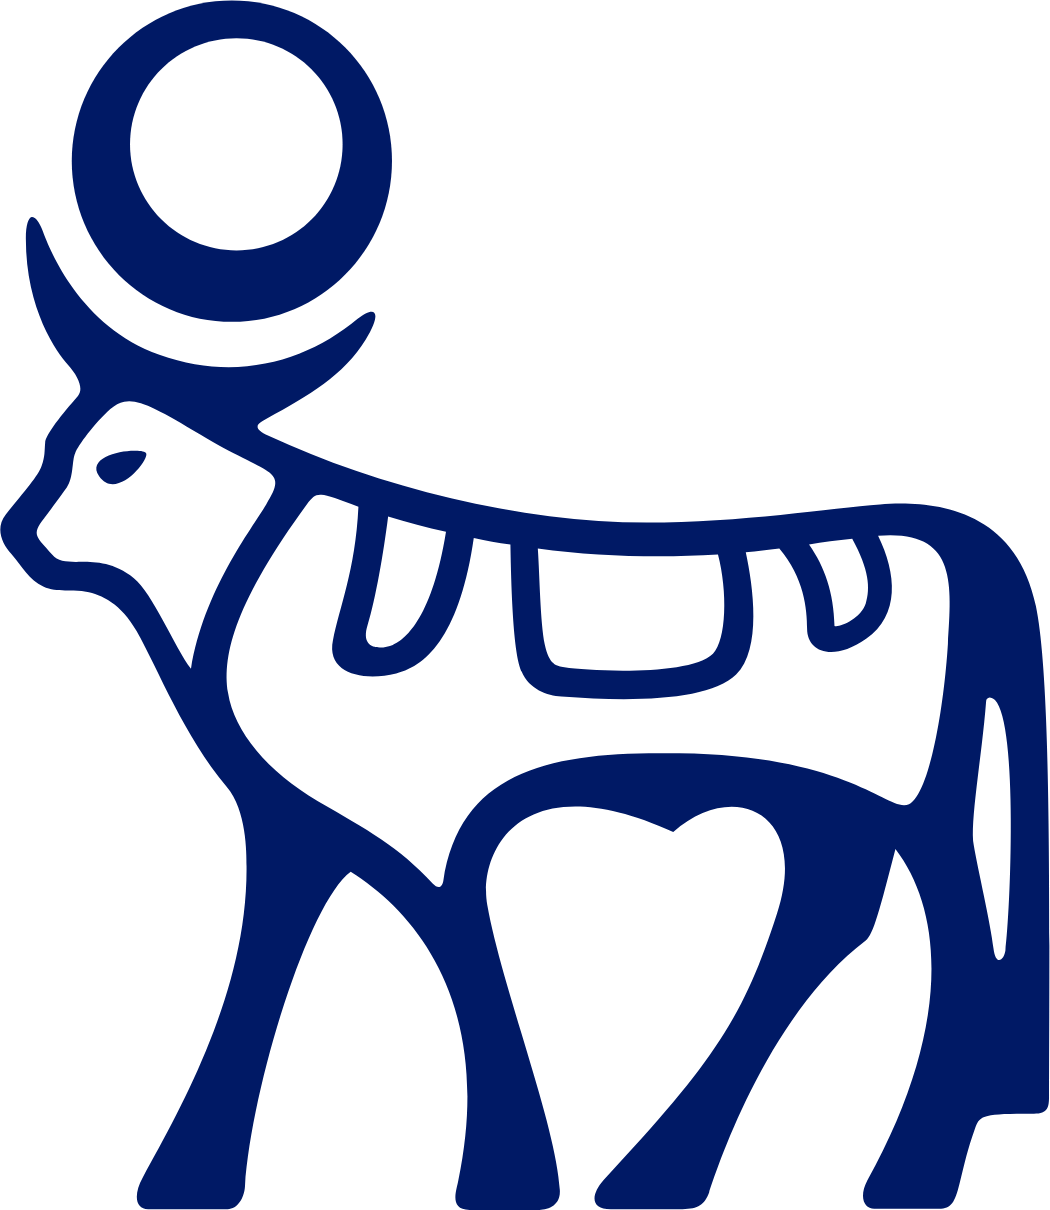 Novo Nordisk logo (PNG transparent)